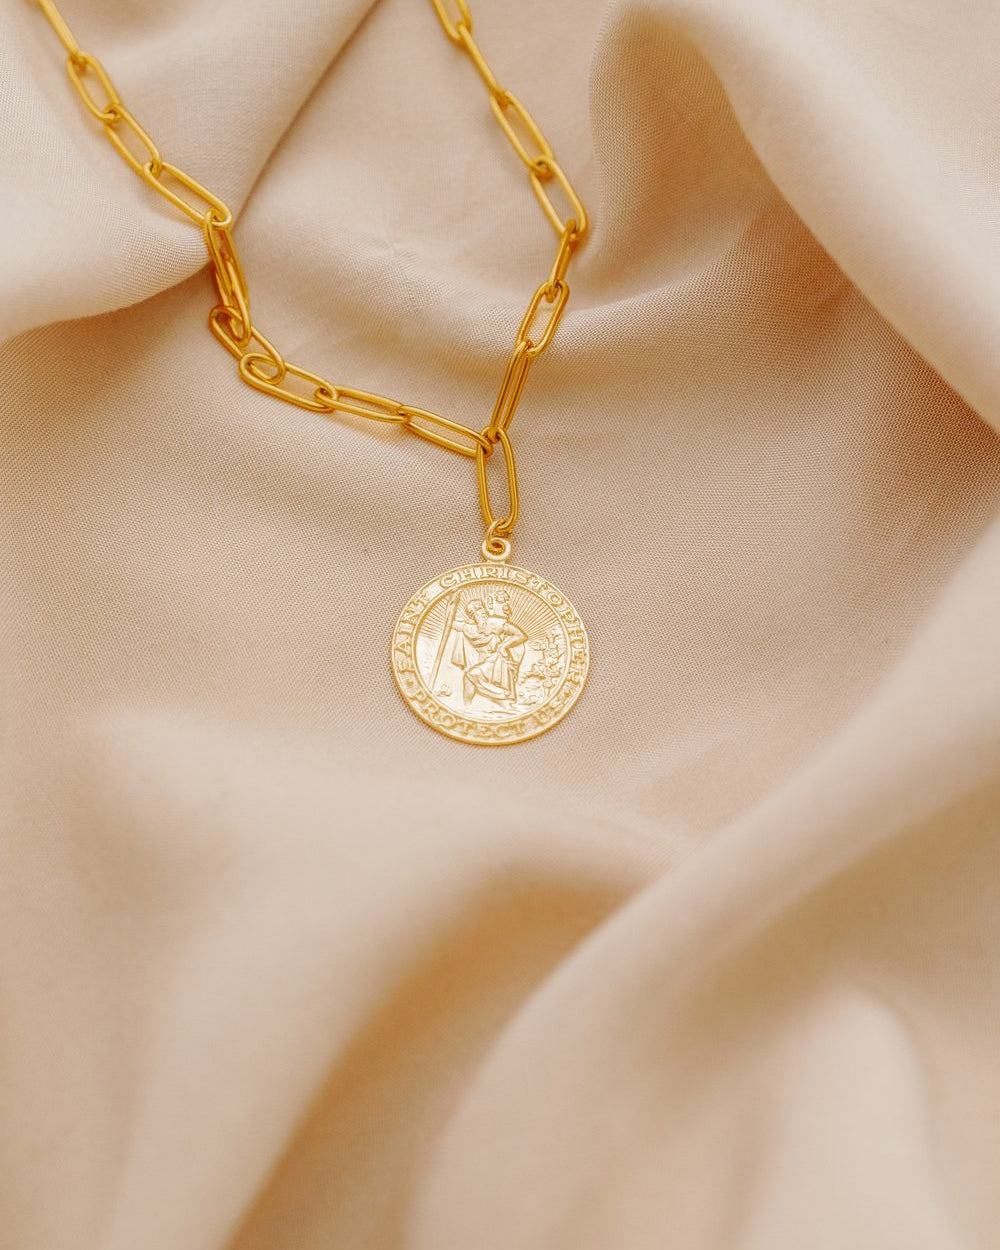 Mini Coin Necklace – Lavender & Grace Designs Inc.